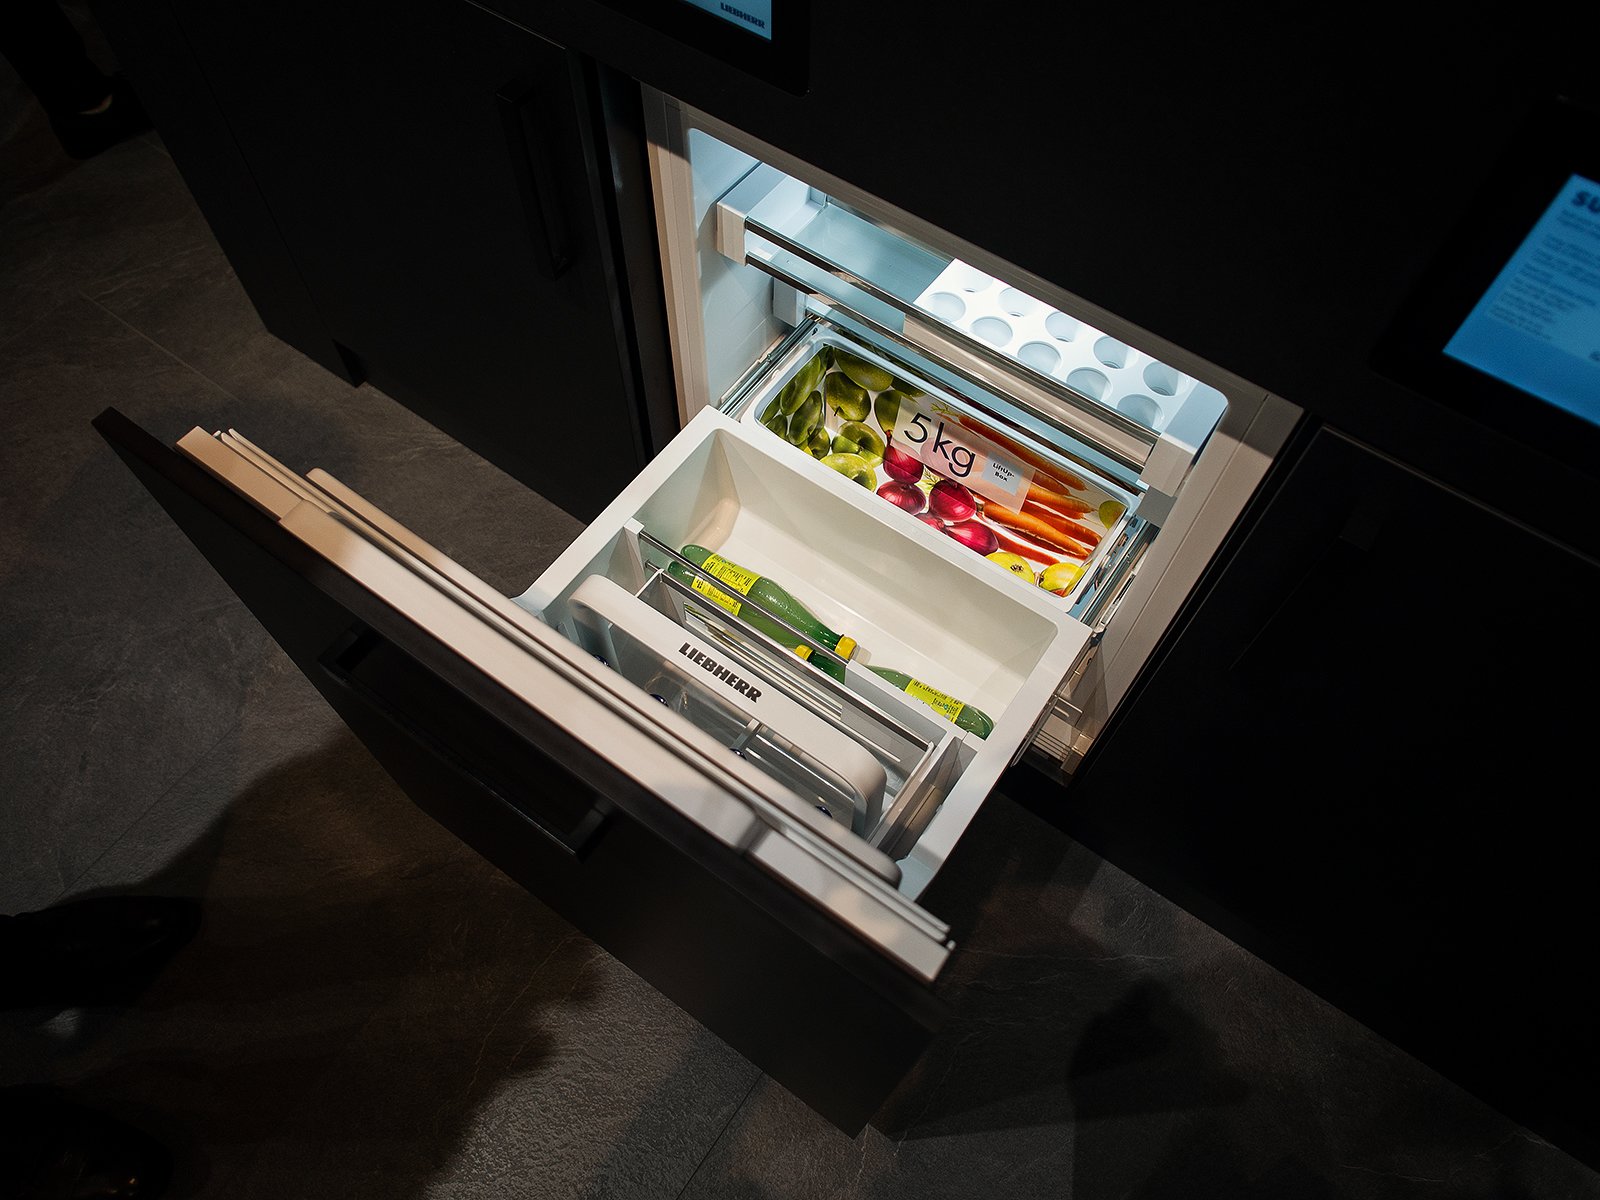 мини холодильник под столешницу в кухню